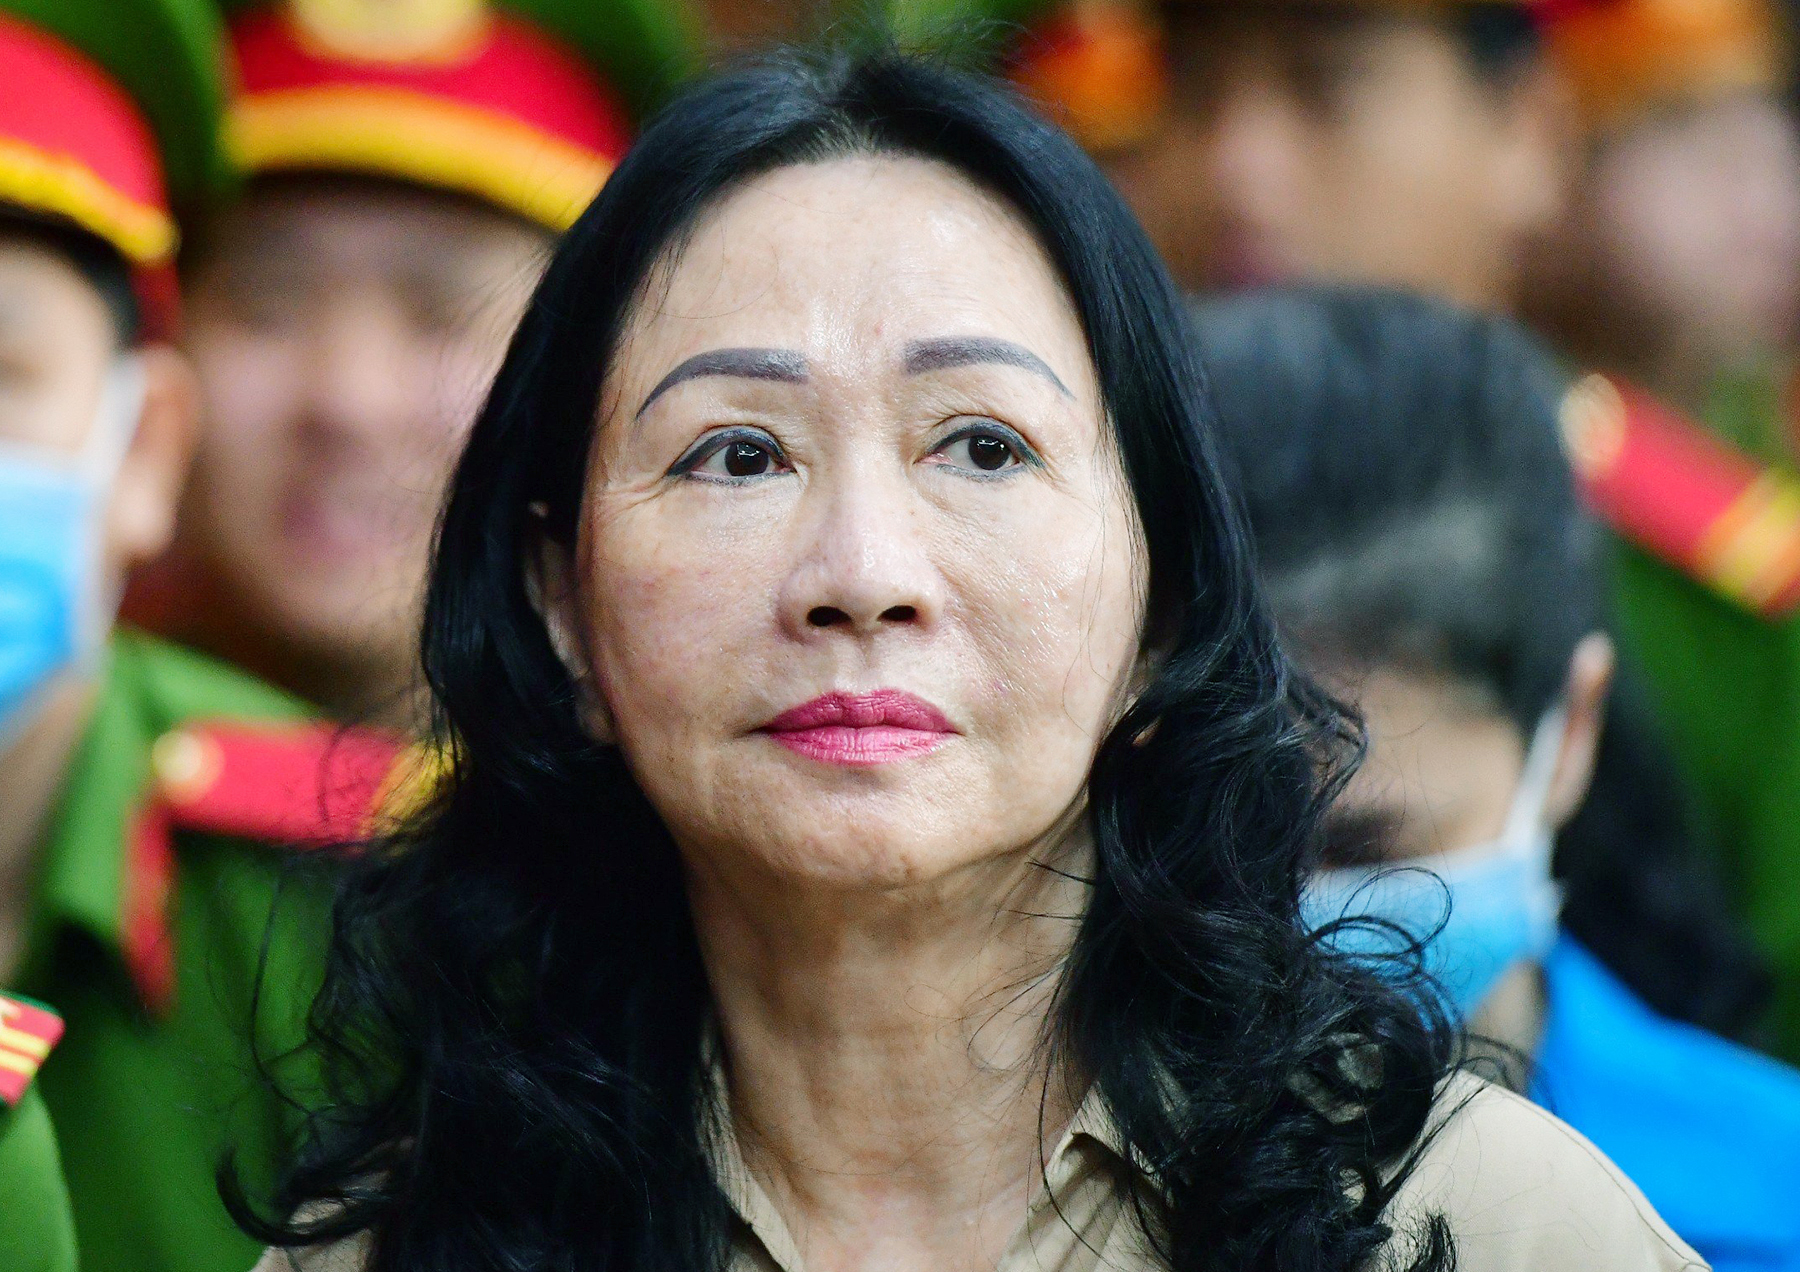 Bà Trương Mỹ Lan được đề nghị 'mức án nghiêm khắc nhất'| Tân Thế Kỷ| TTK NEWS